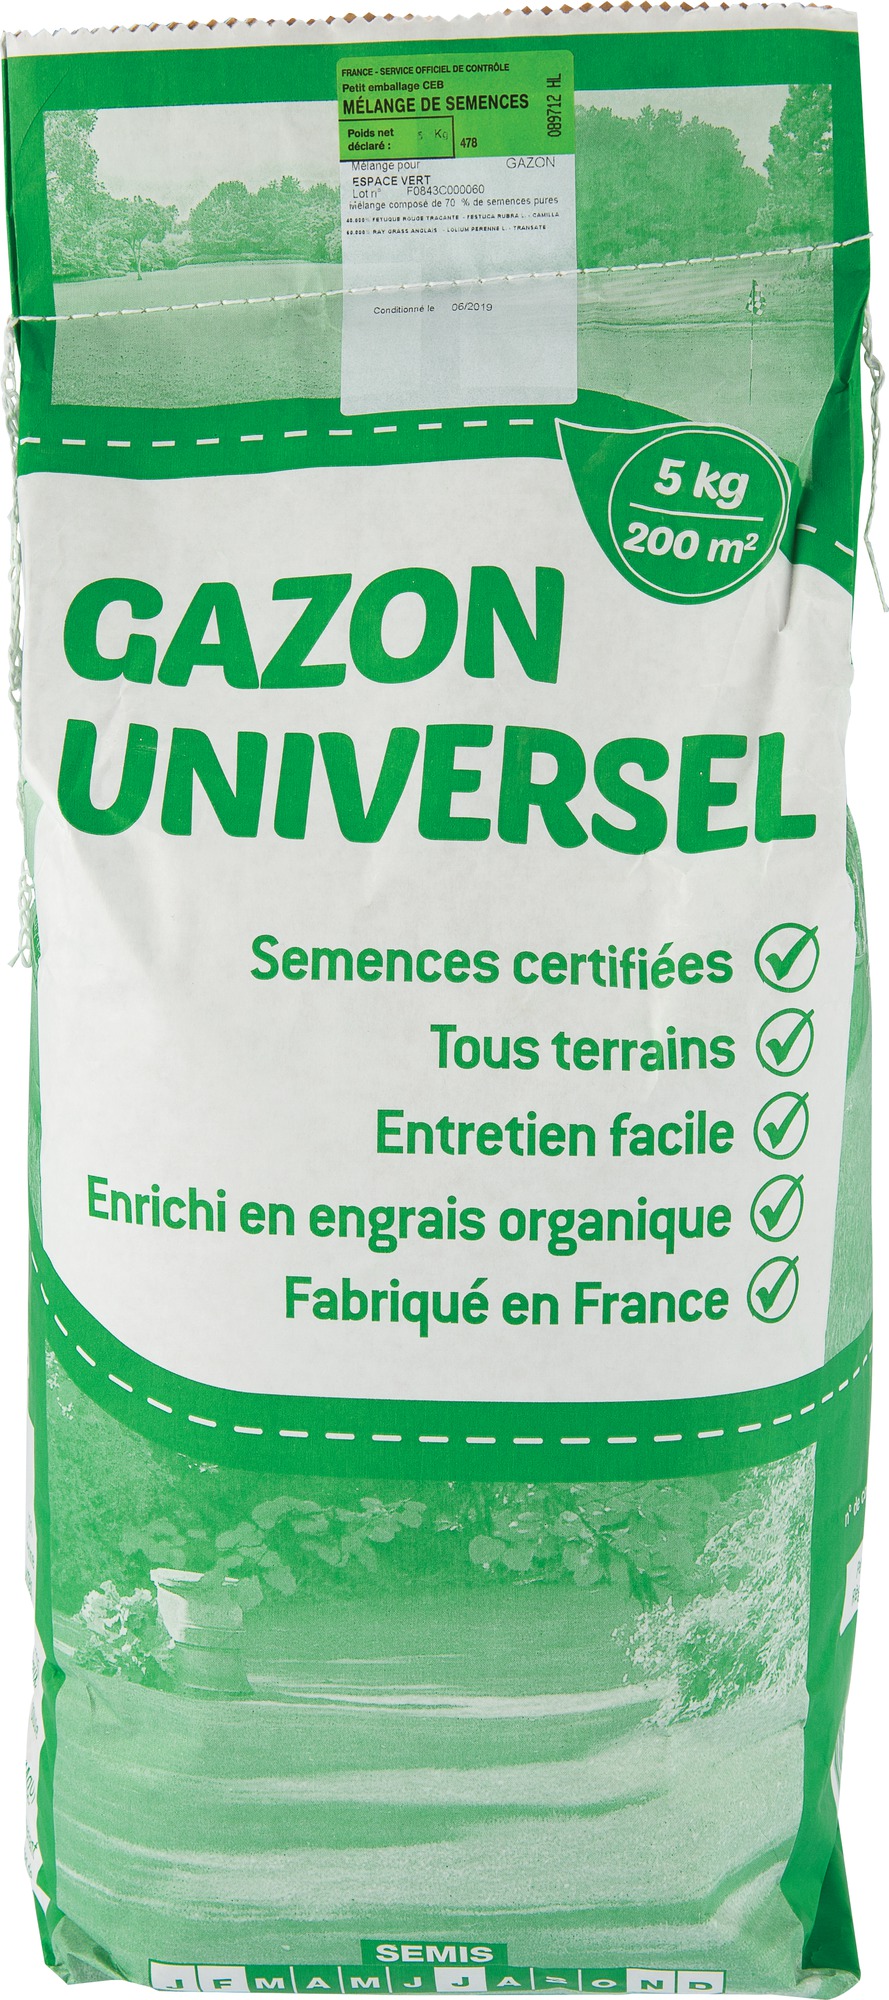 Gazon universel espace vert Les doigts verts - 5 kg